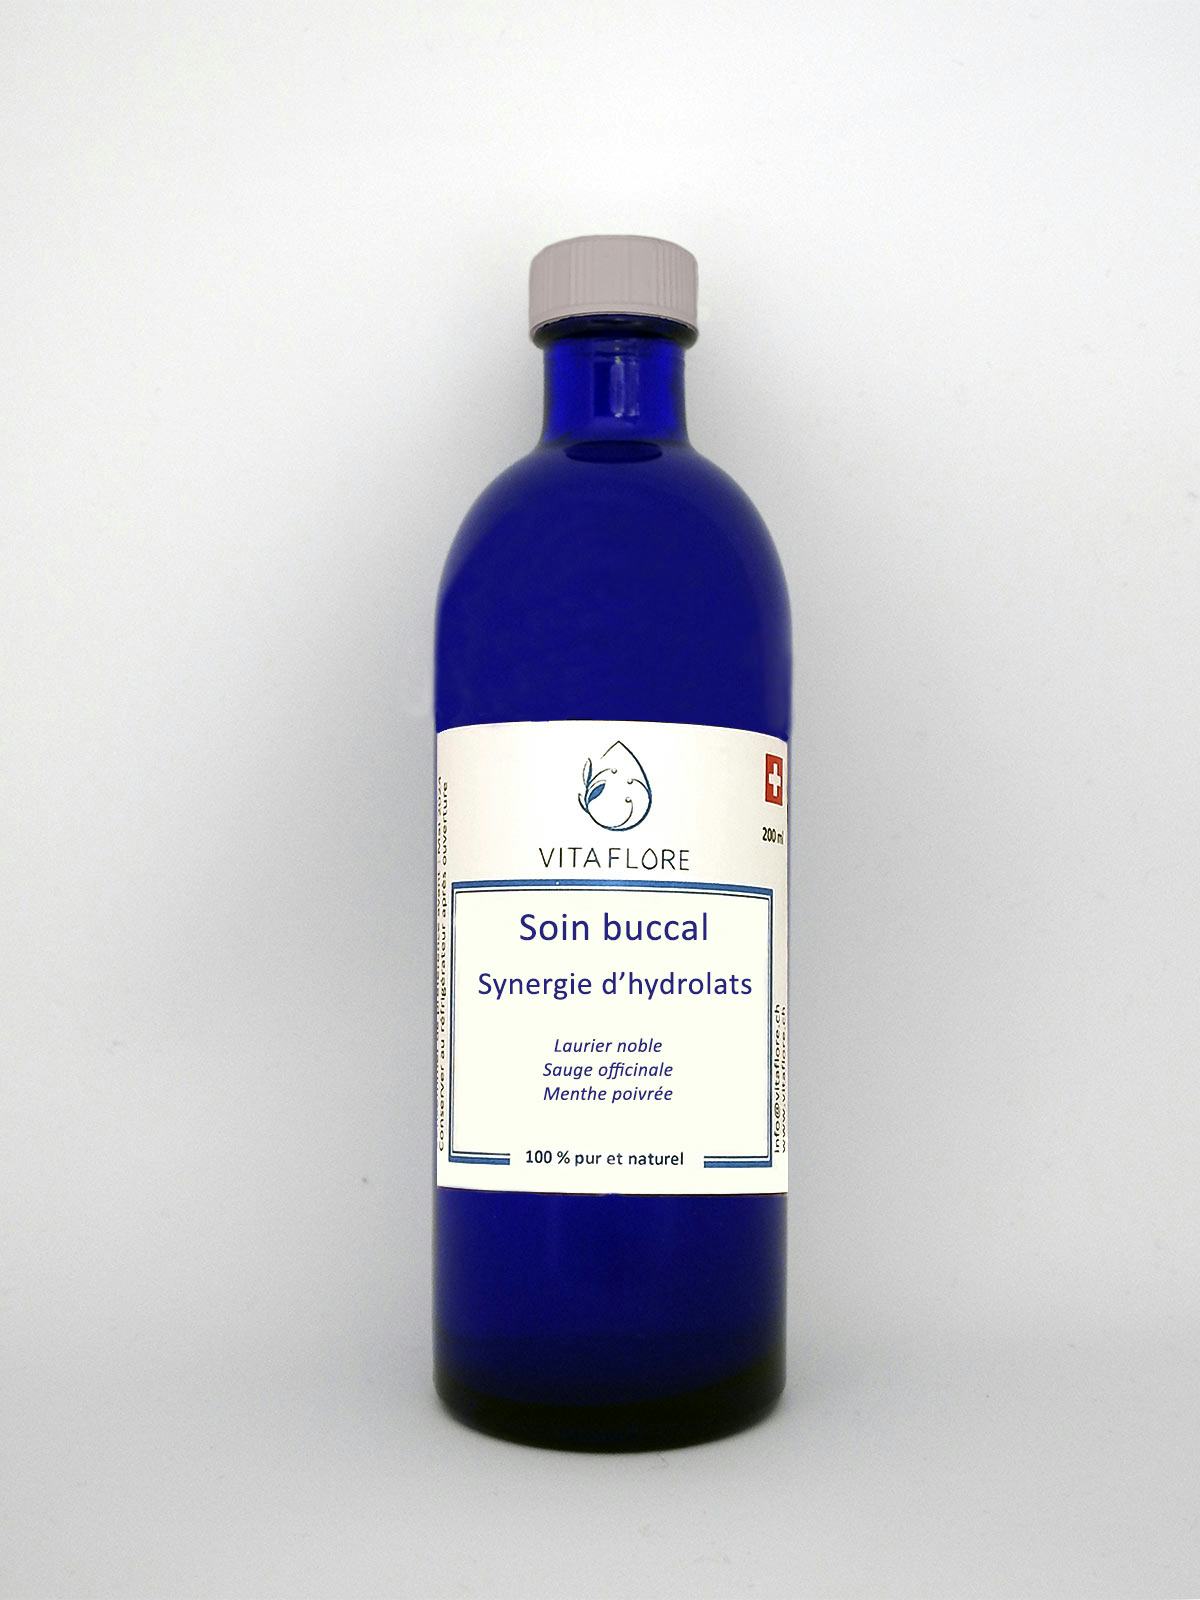 Synergie d’hydrolats – Soin buccal, prodotto artigianale per la vendita diretta in Svizzera